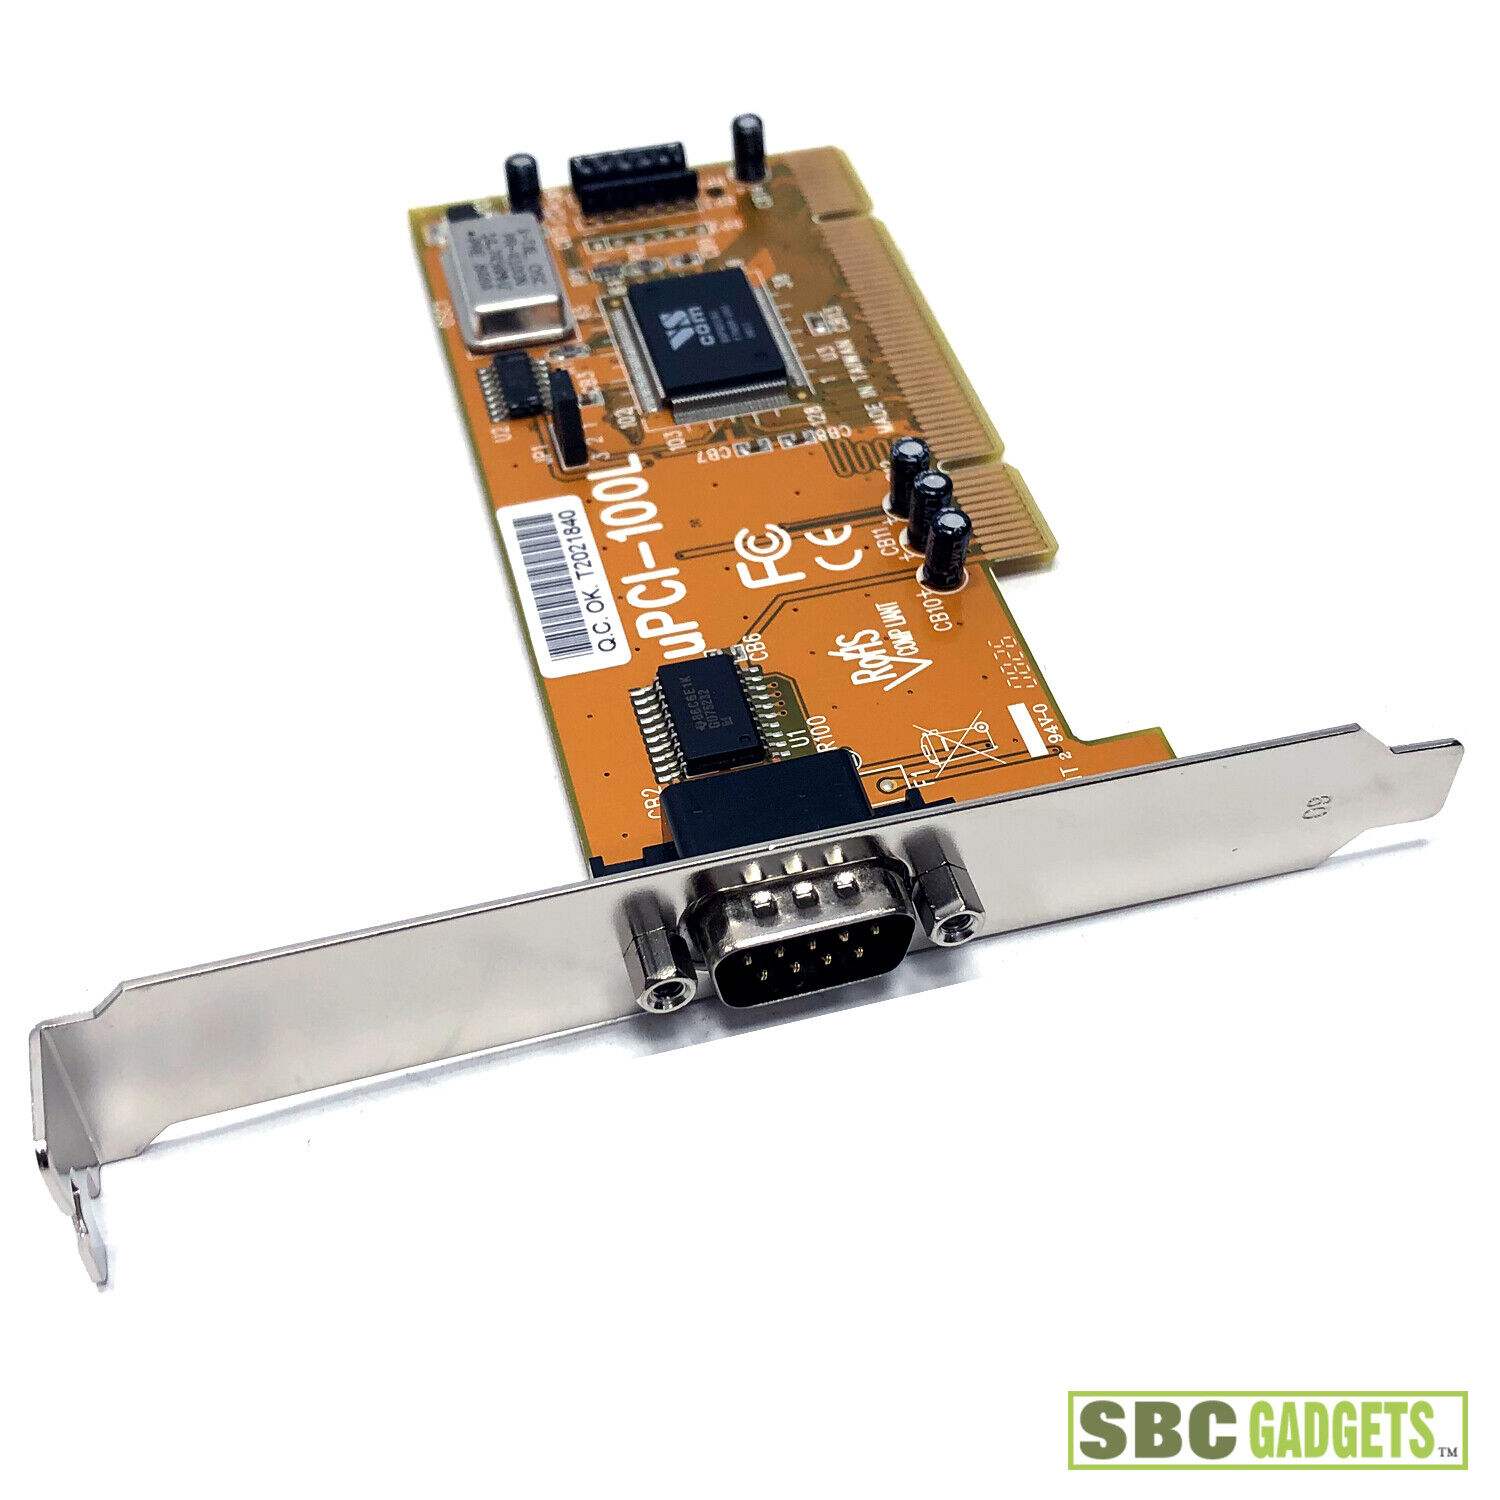 VScom UPCI-100L 1x RS-232 Single Port PCI Card